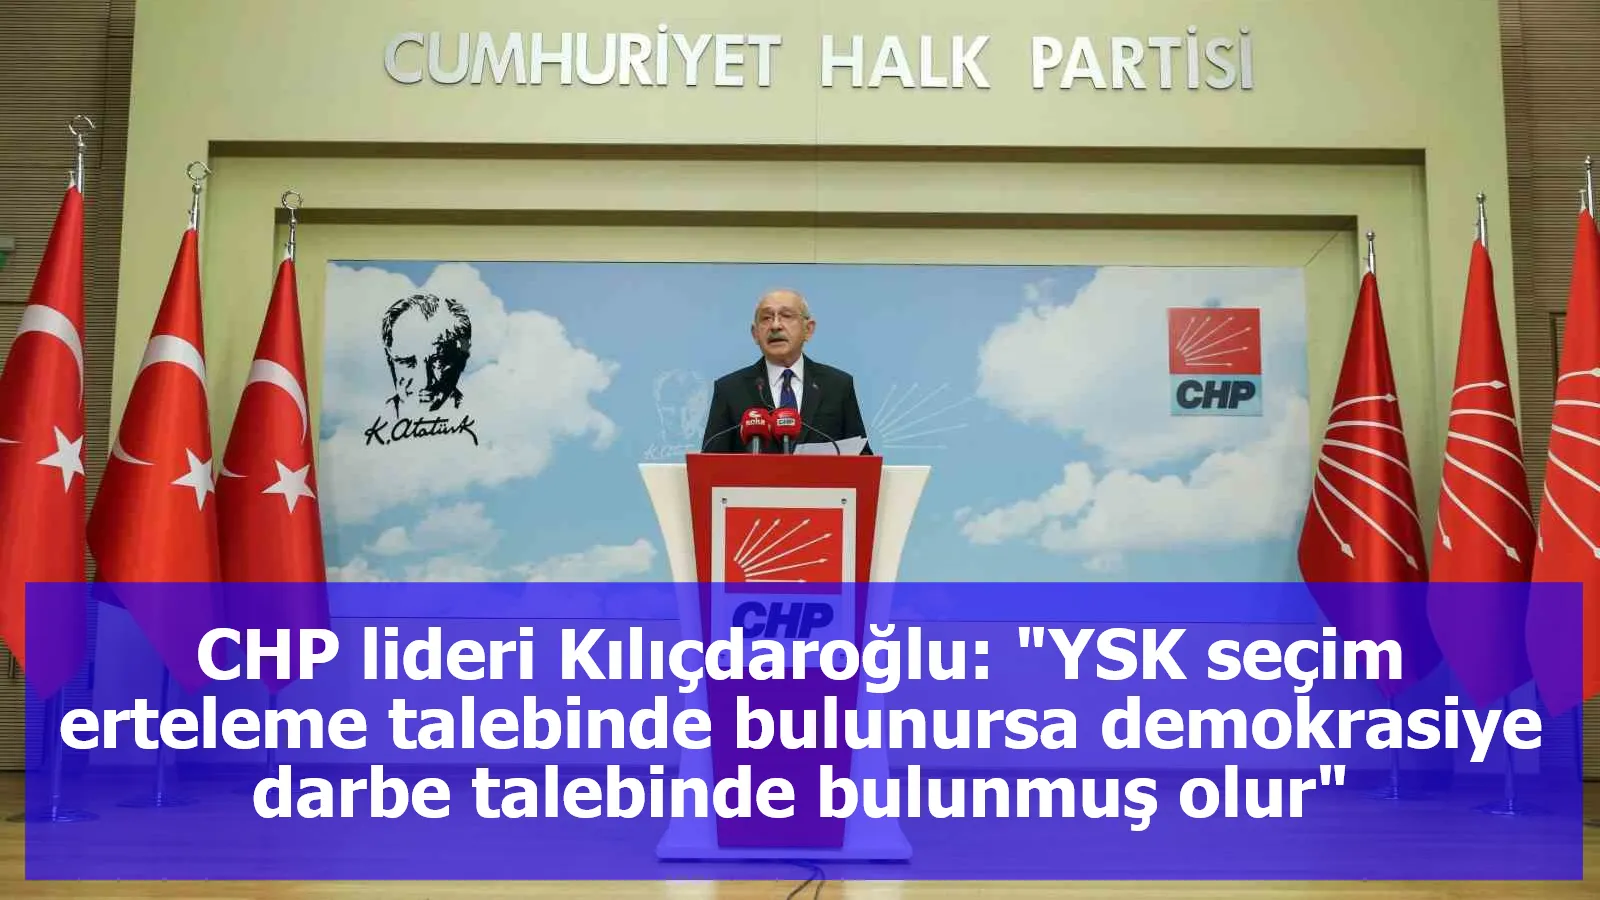 CHP lideri Kılıçdaroğlu: "YSK seçim erteleme talebinde bulunursa demokrasiye darbe talebinde bulunmuş olur"